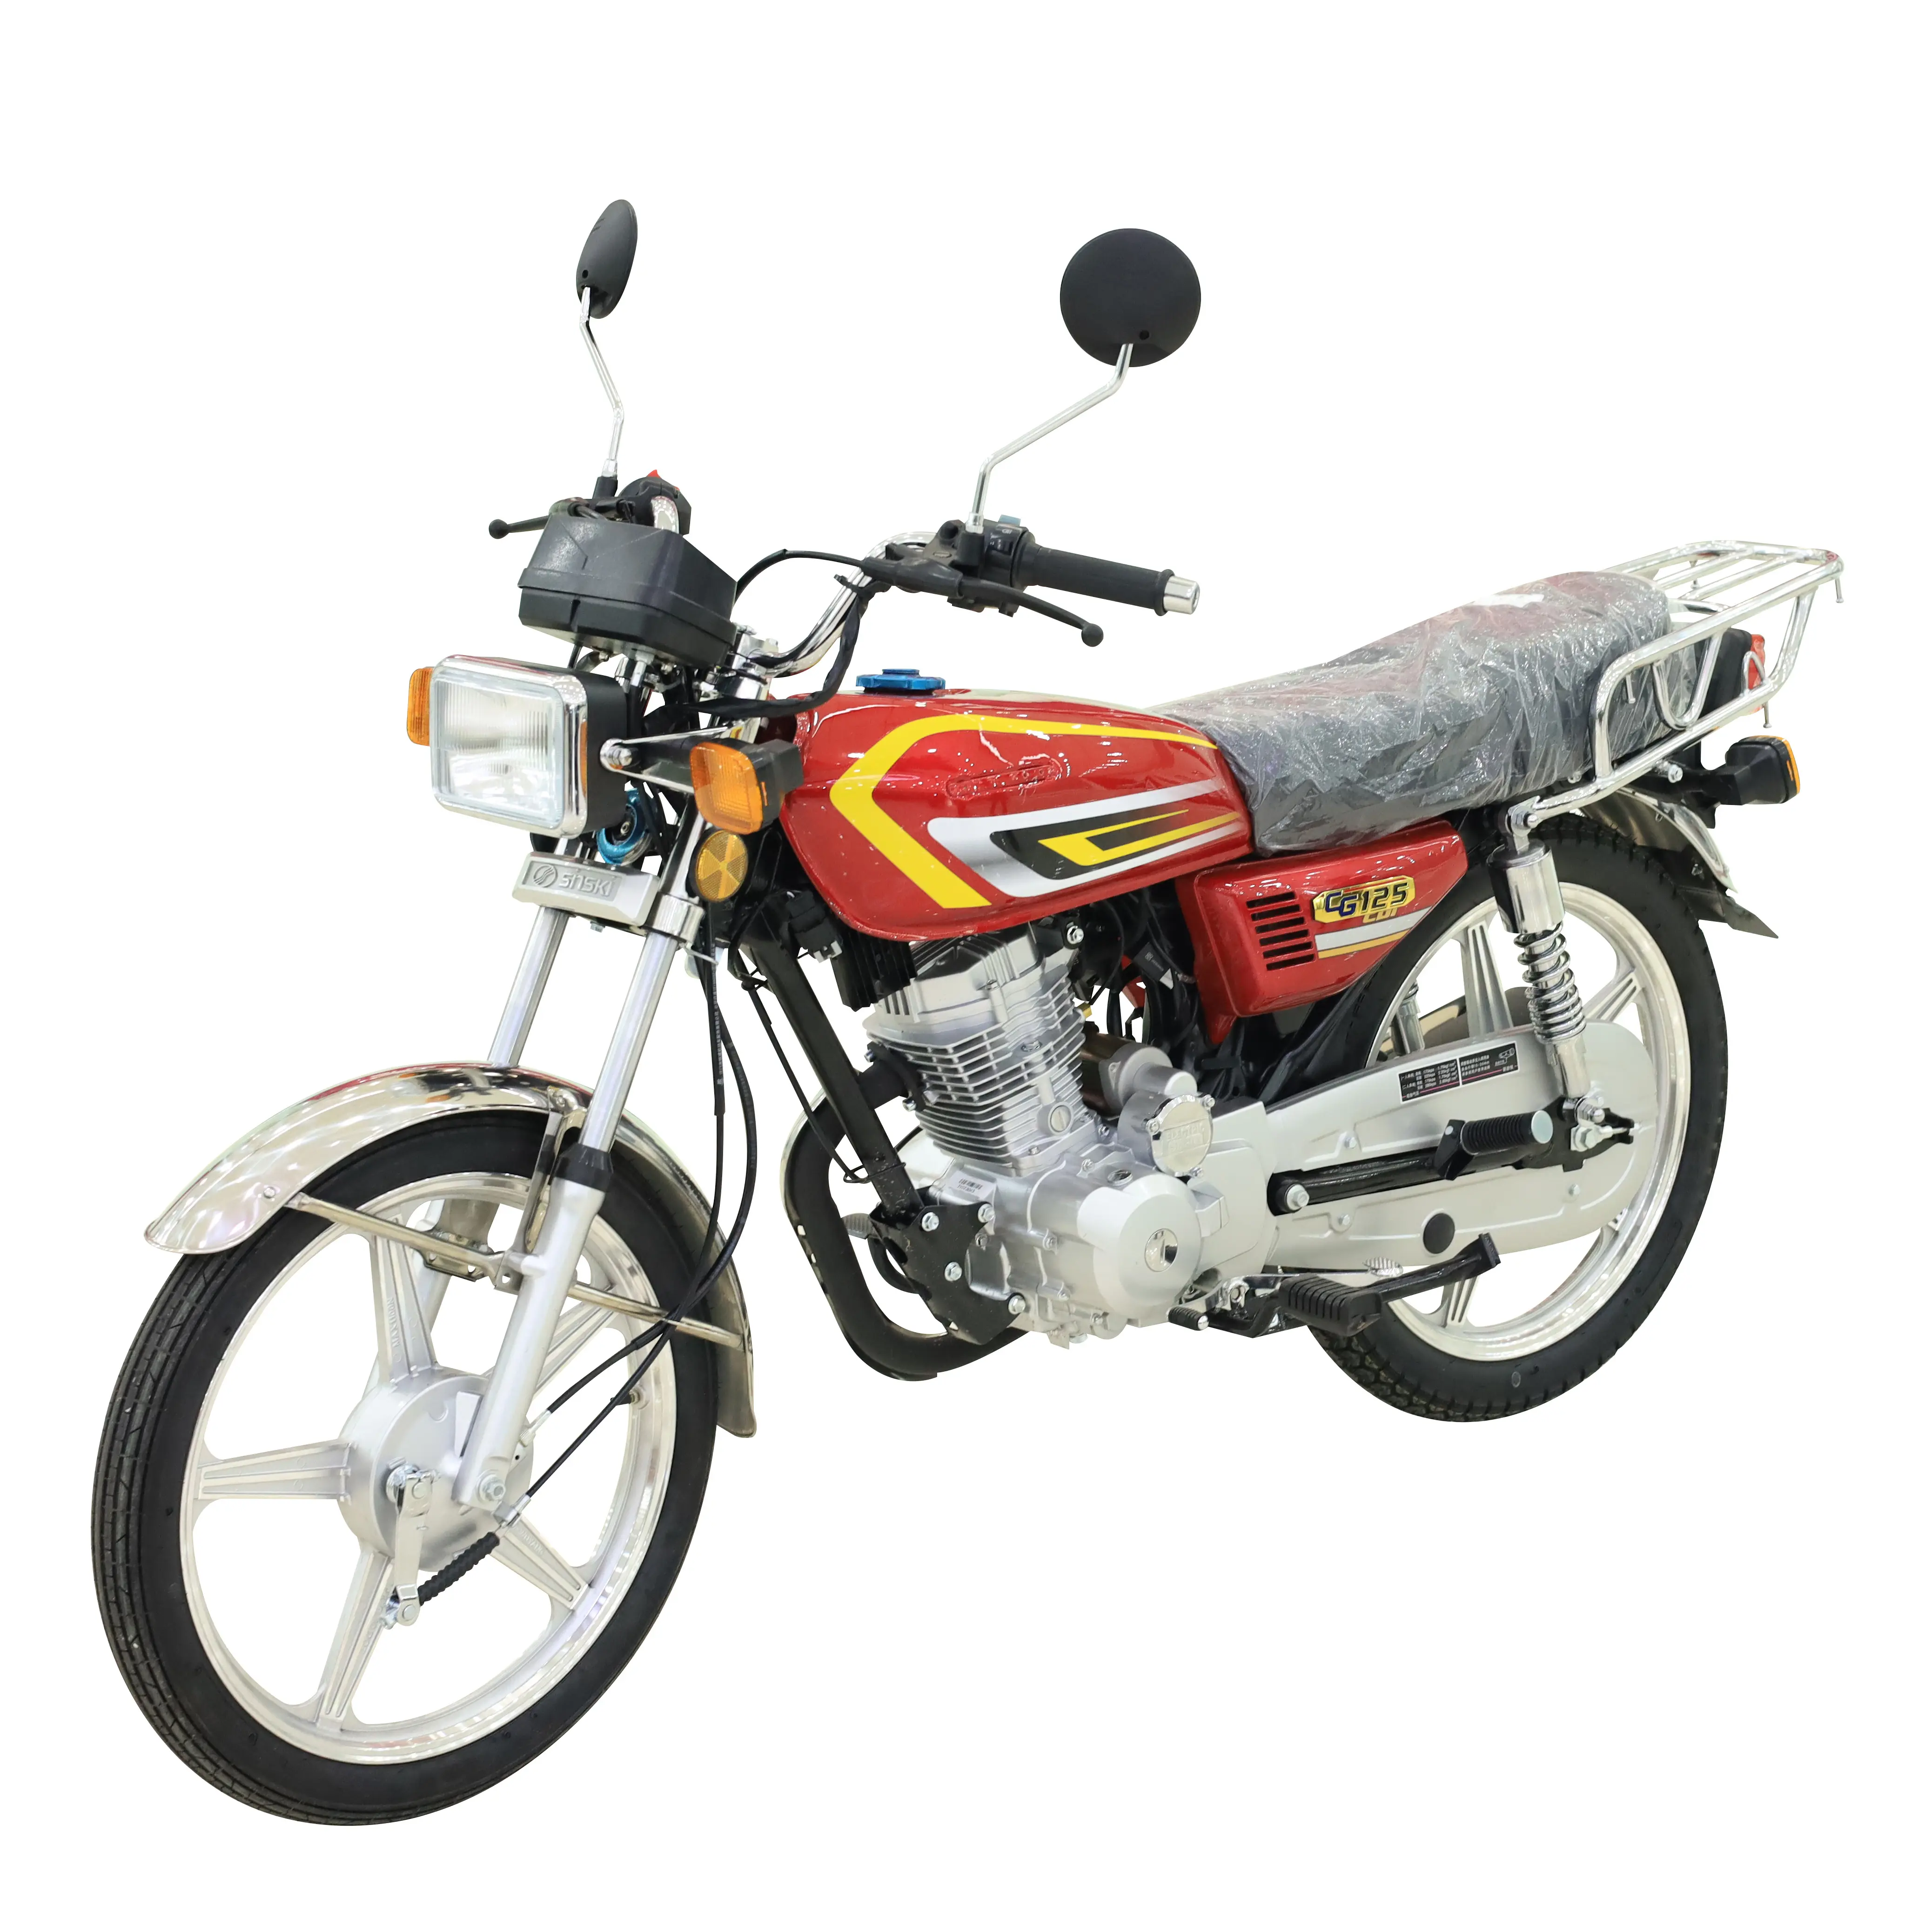 Heap-motocicleta de gasolina para adulto, vehículo todoterreno de alta calidad, 125cc